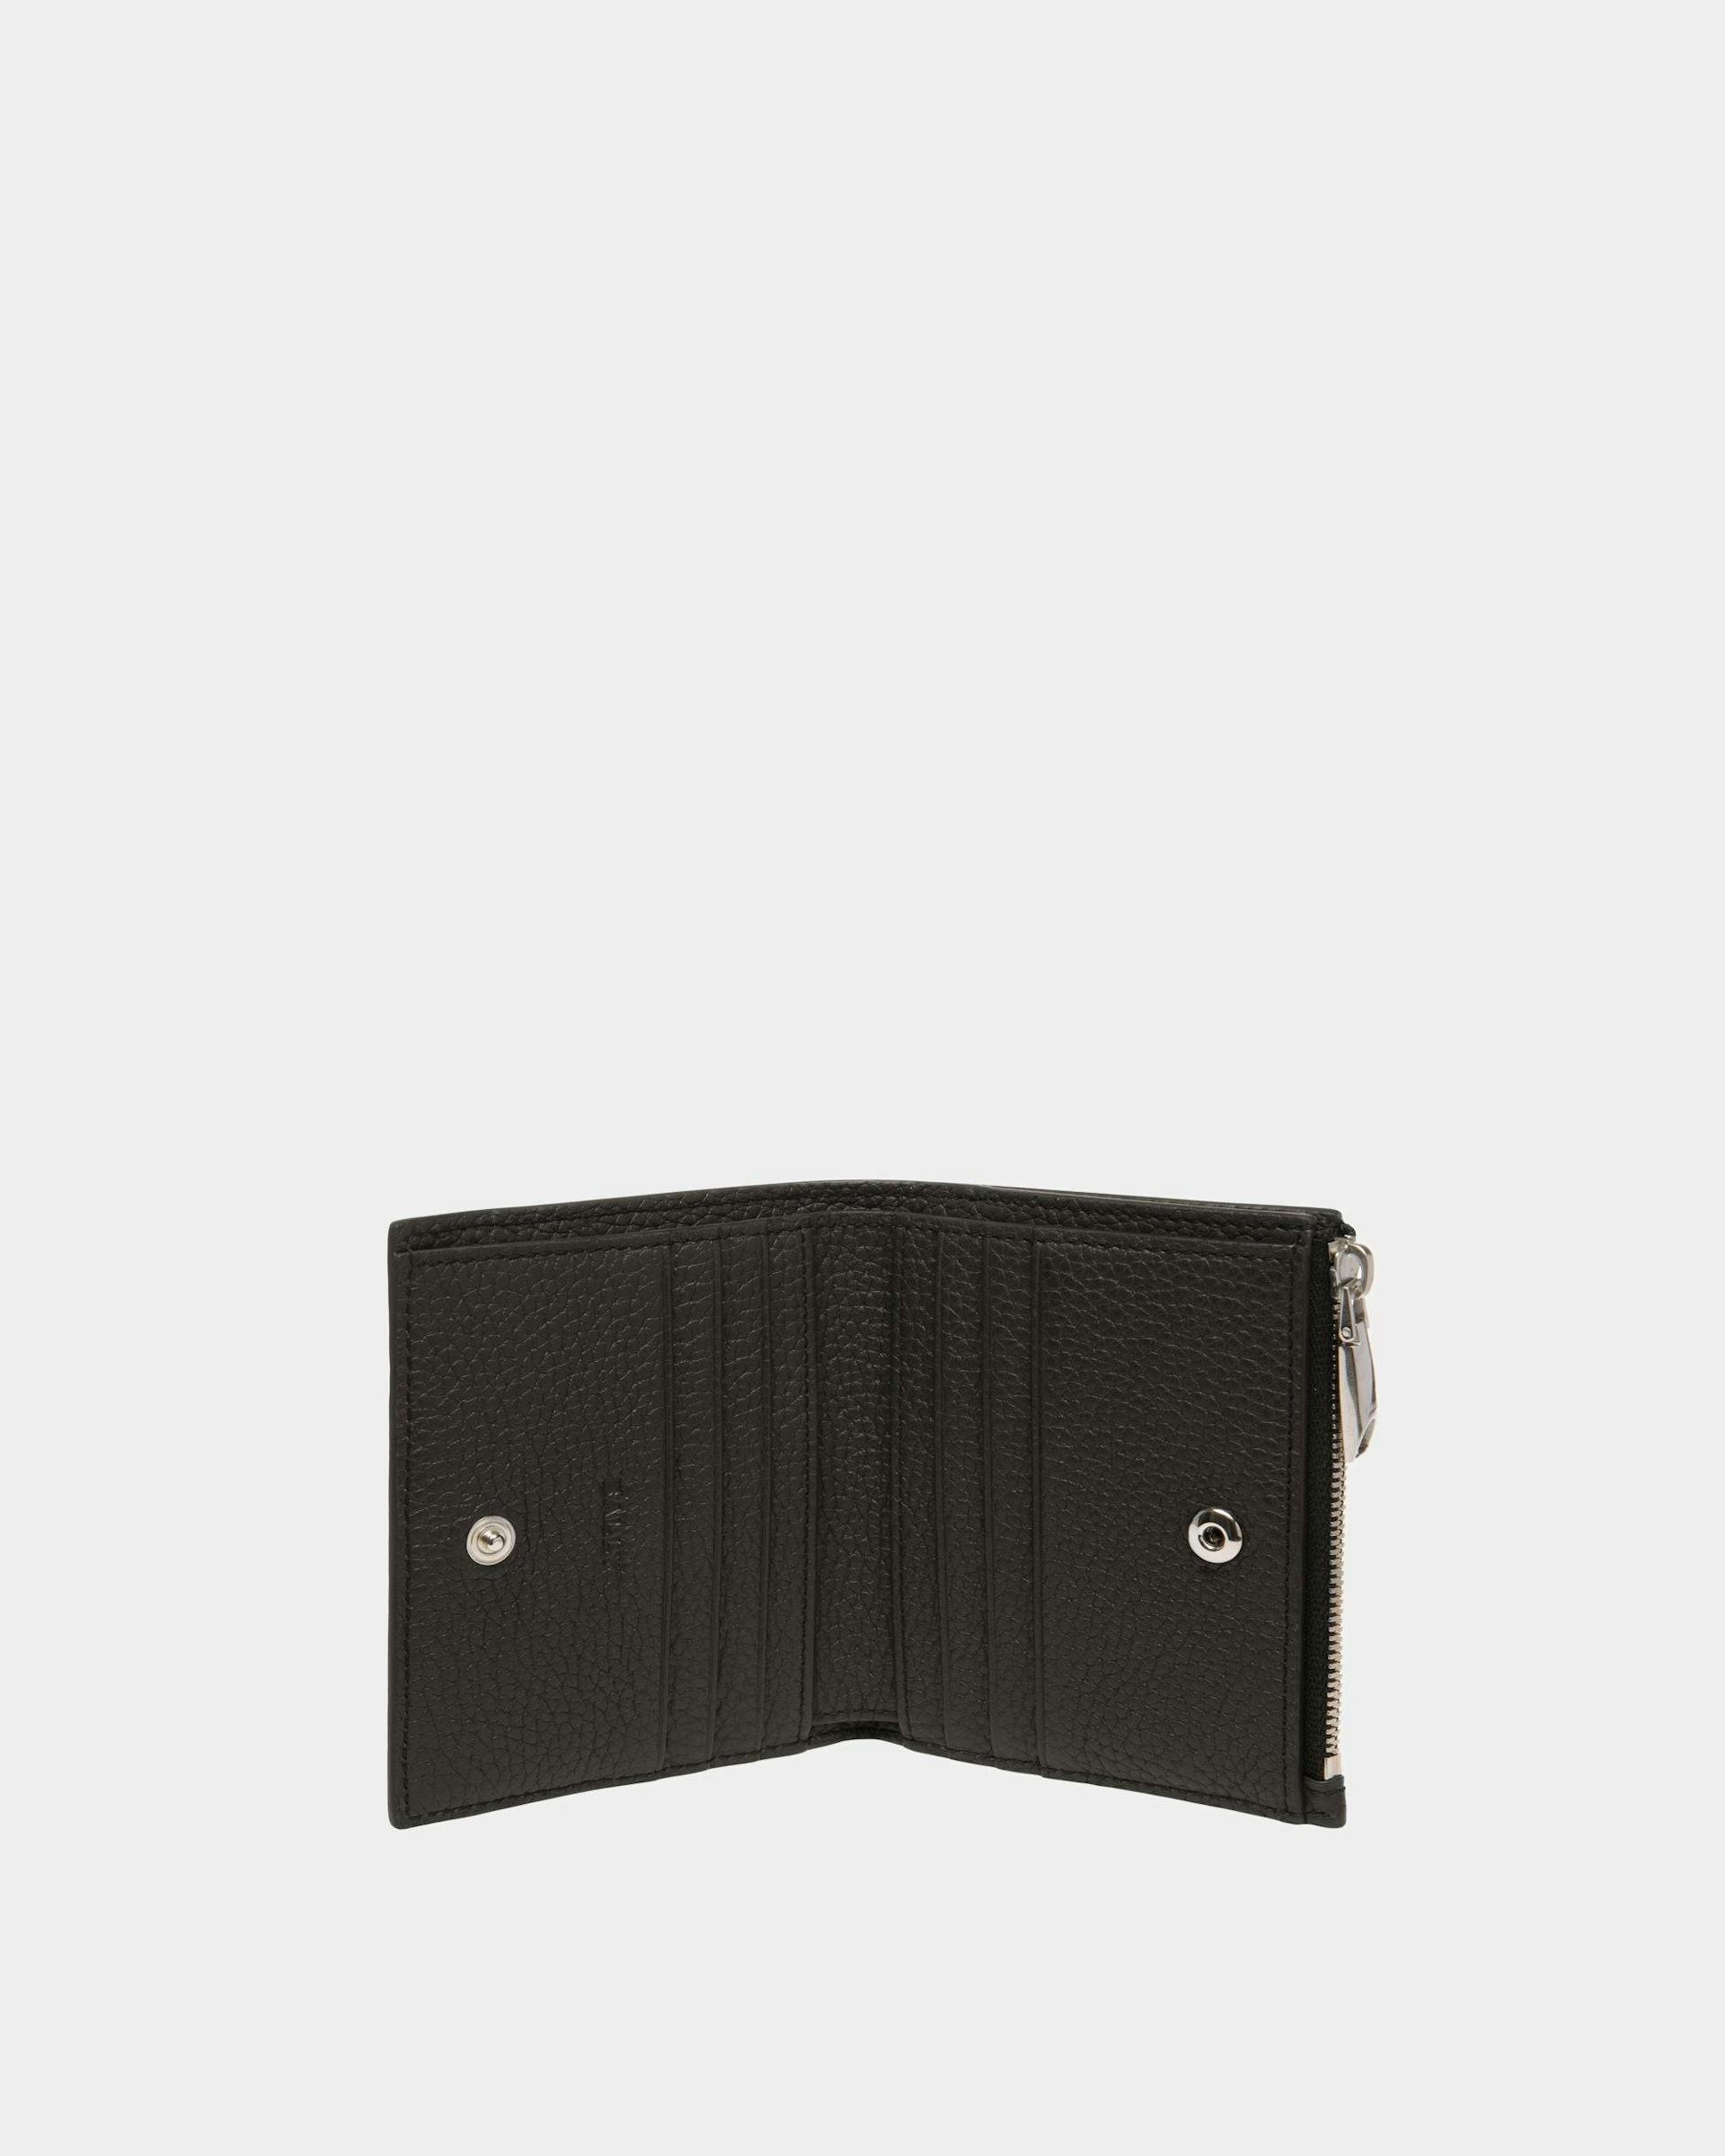 Men's Ribbon Wallet In Black Leather | Bally | Still Life Open / Inside